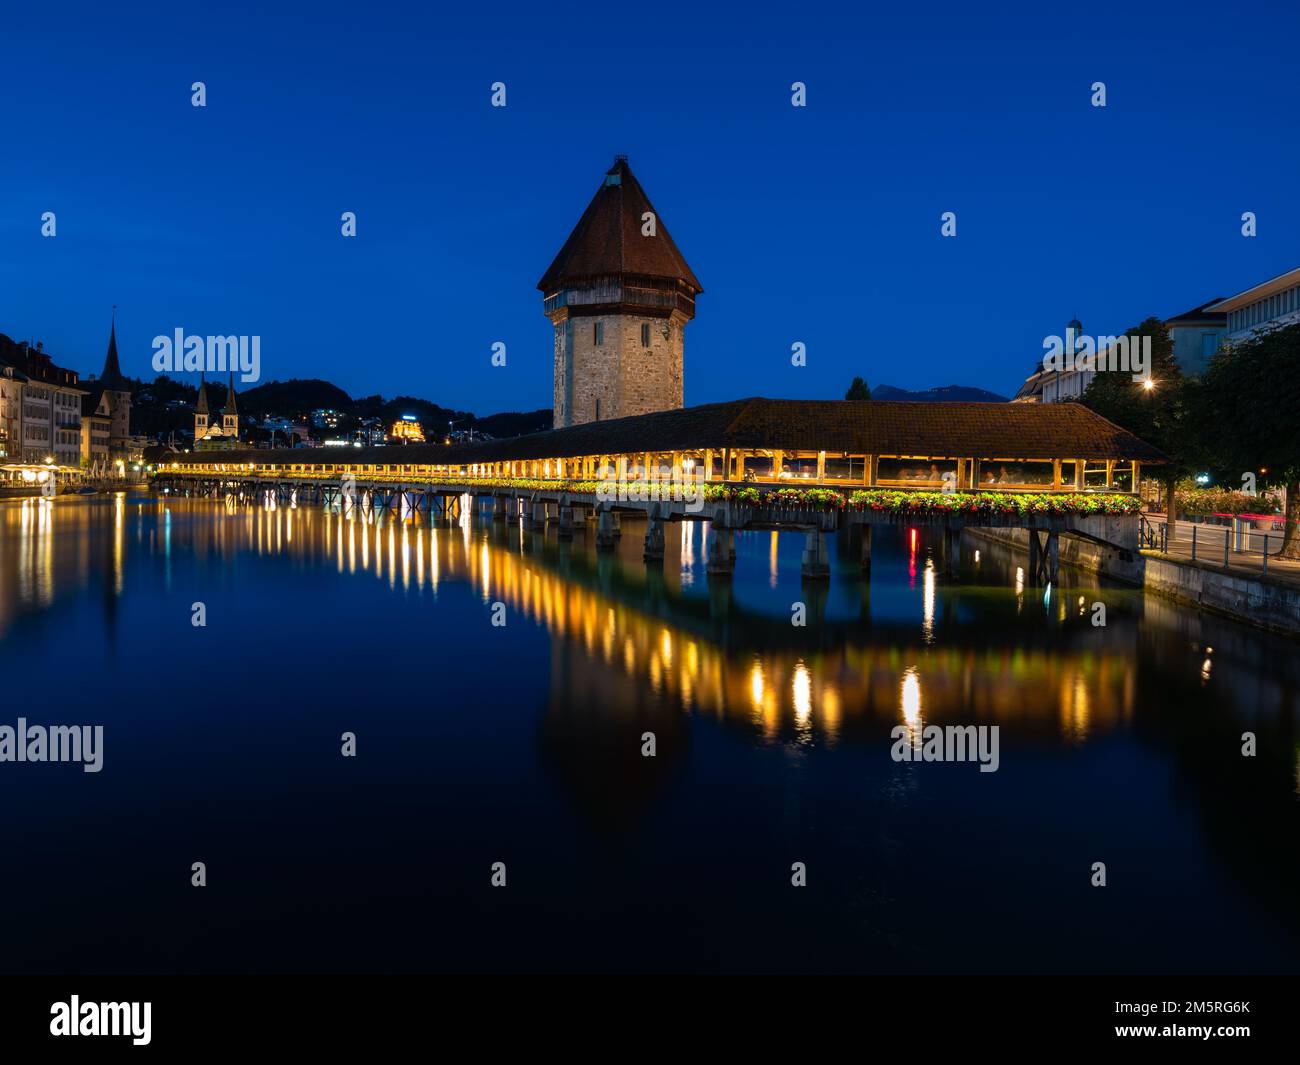 Imagen de Lucerna, Suiza, con el famoso puente histórico de madera de la Capilla, durante la hora azul del crepúsculo. Foto de stock